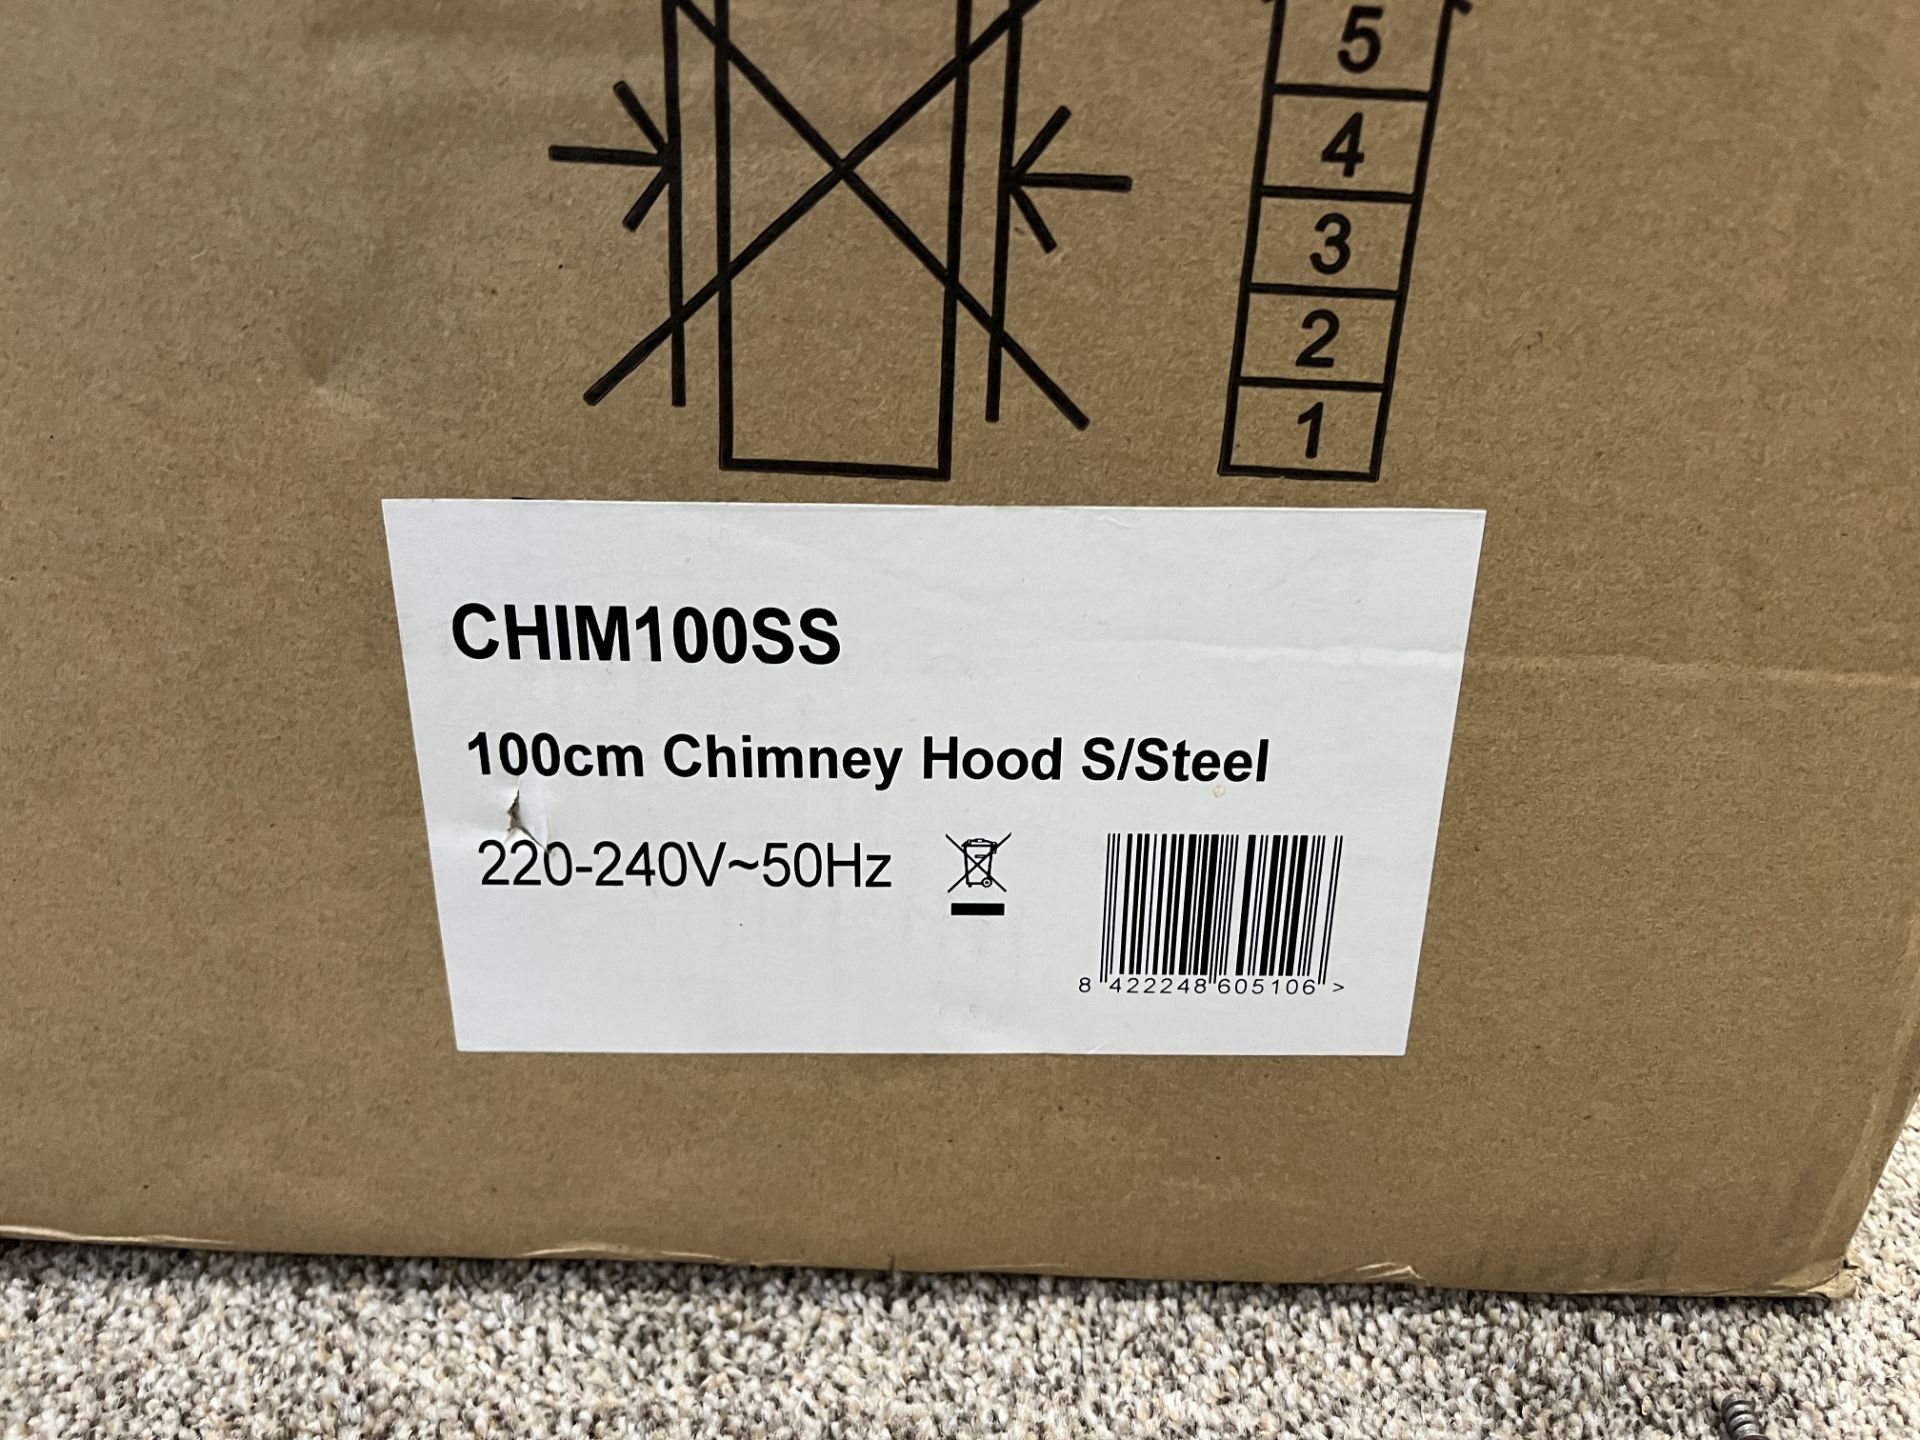 100cm Chimney Hood S/Steel - Image 2 of 3